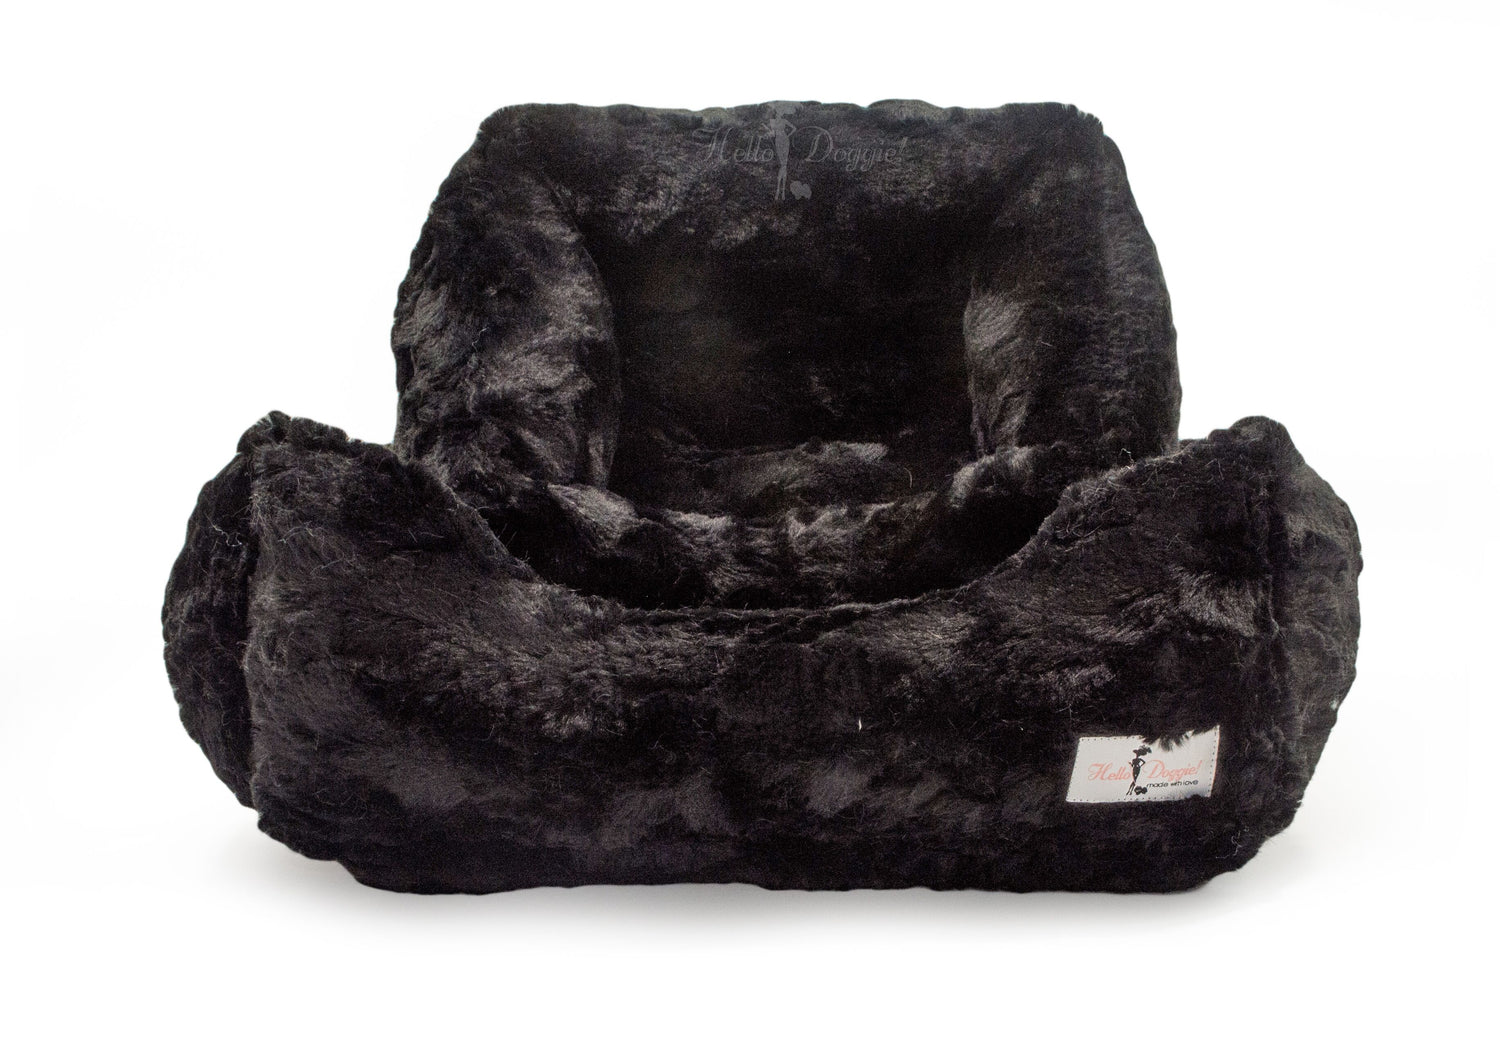 luxury soft dog bed black color